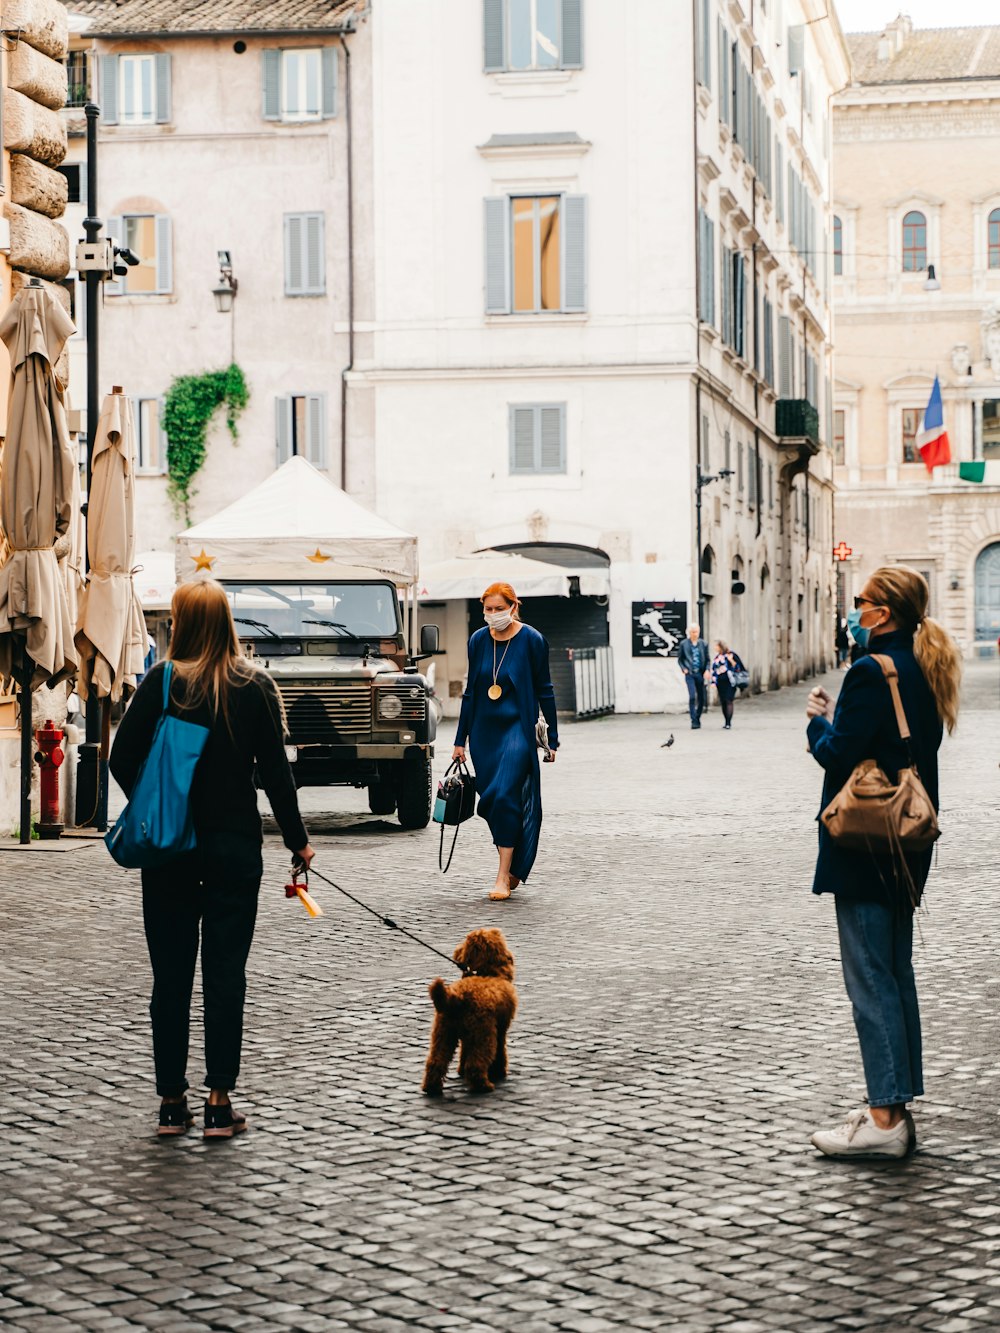 Frau in schwarzer Jacke geht tagsüber mit braunem Hund auf dem Bürgersteig spazieren